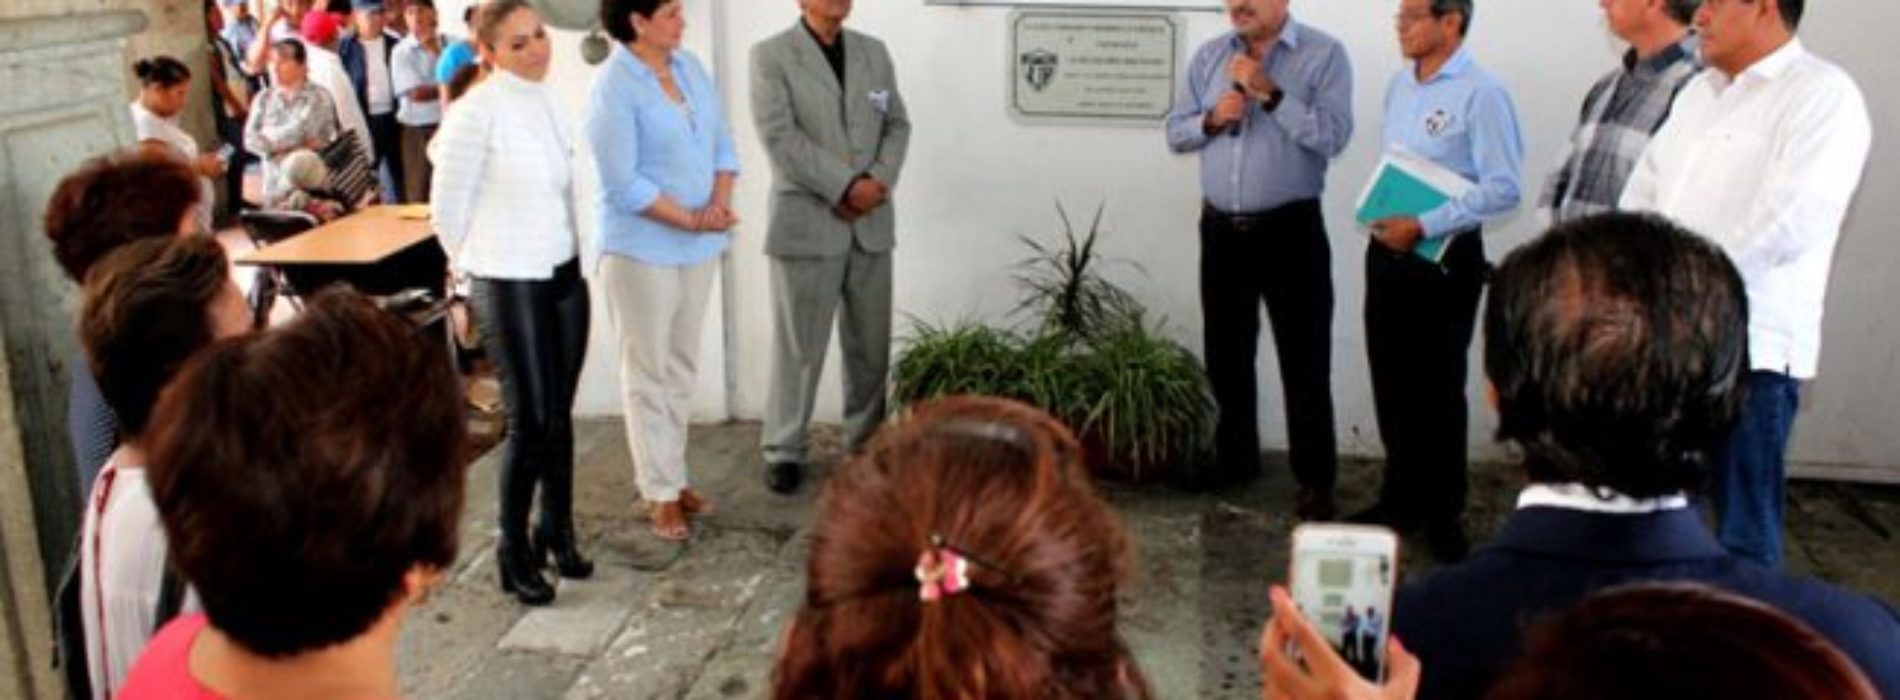 Develan placa en honor a la Escuela Primaria “Juan Jacobo
Rousseau”